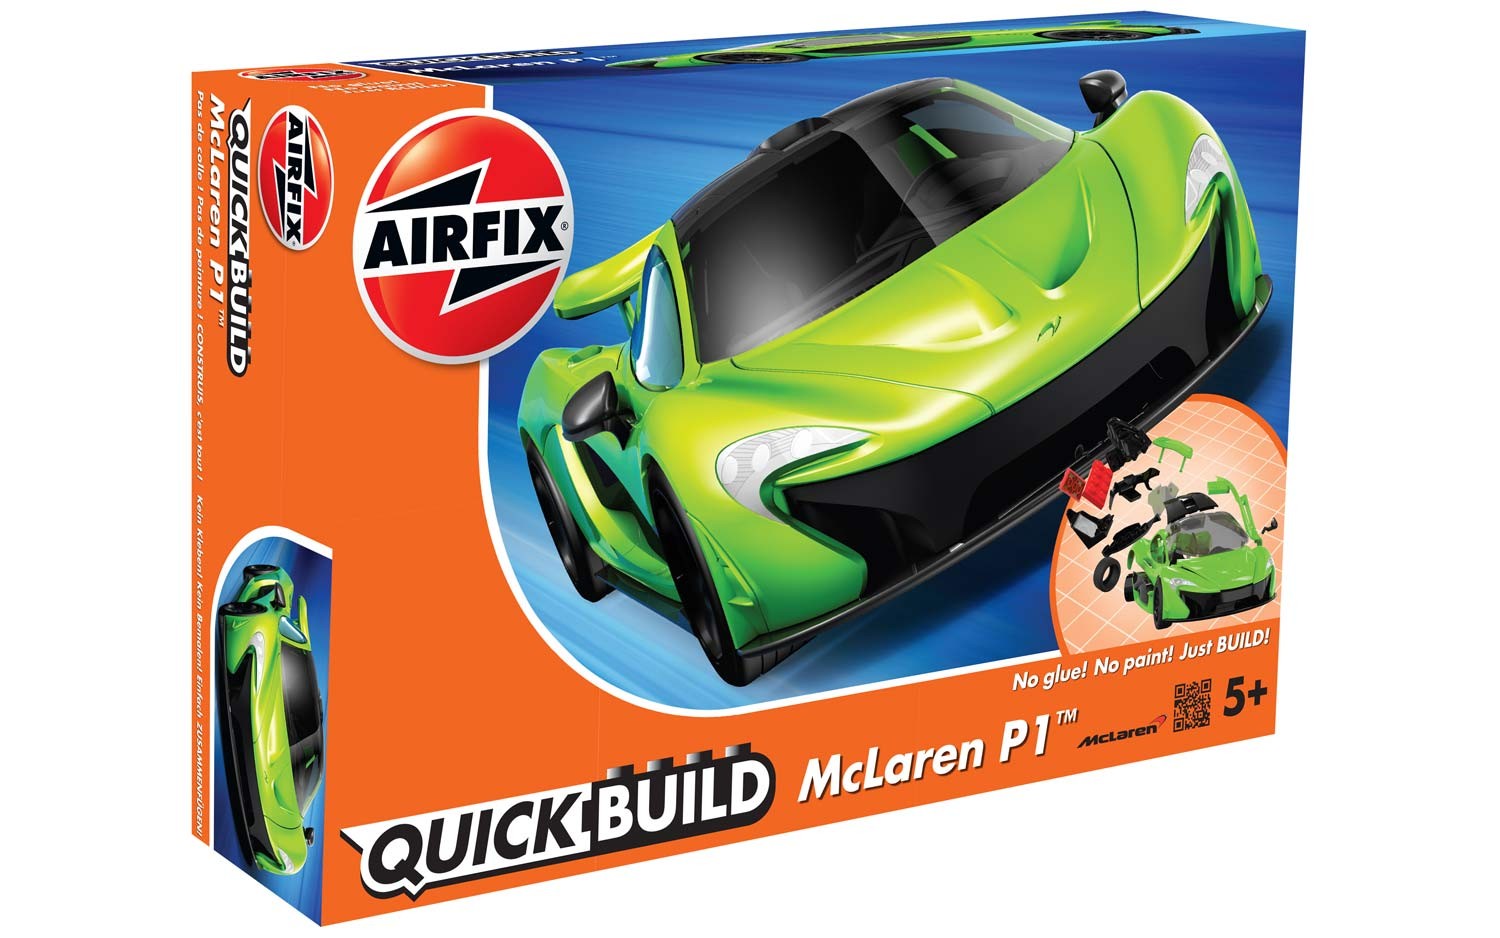 Airfix J6021 QUICK BUILD McLaren P1 GREEN - No Glue, No Paint, Just Build it ###